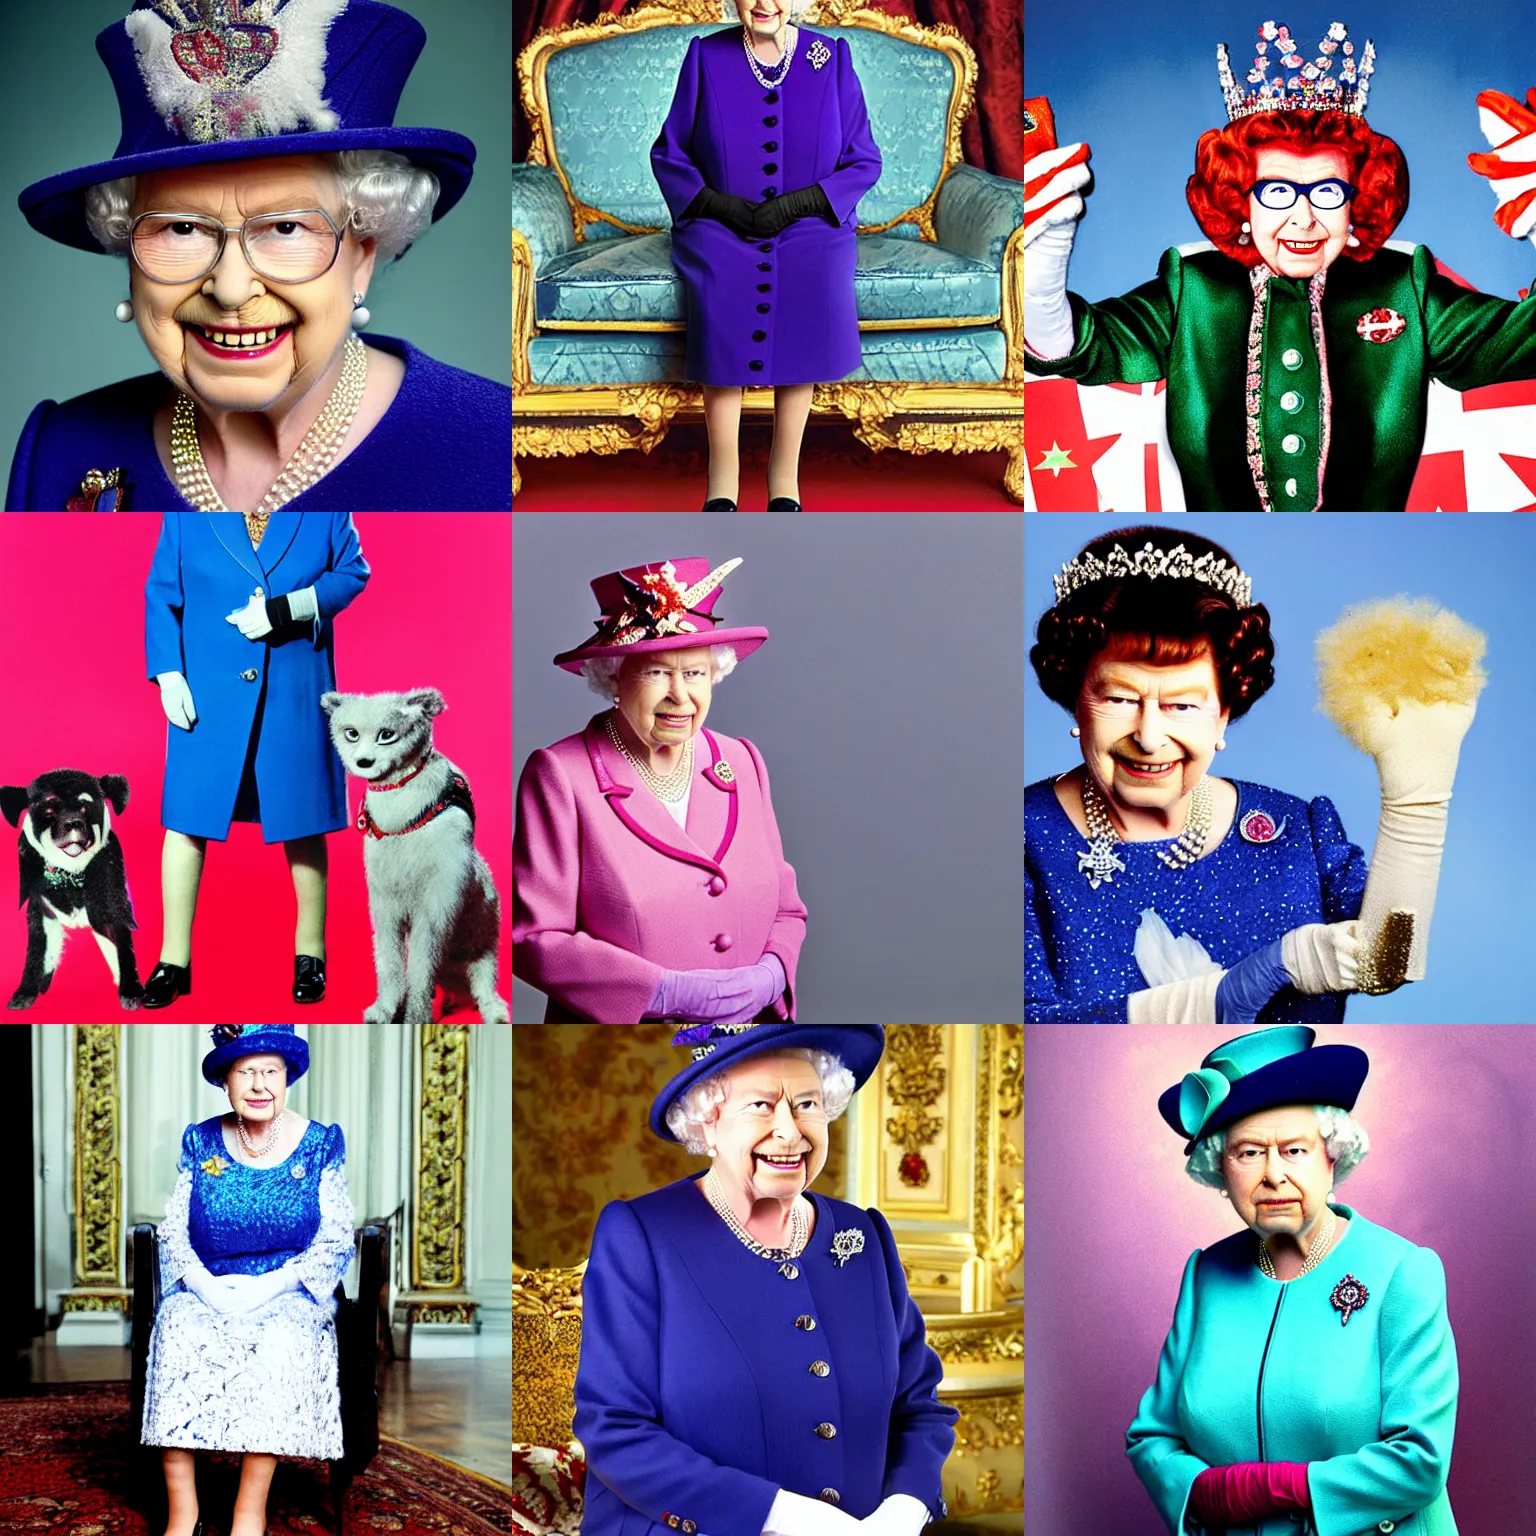 Prompt: Queen Elizabeth dressed as Austin Powers, portrait photograph